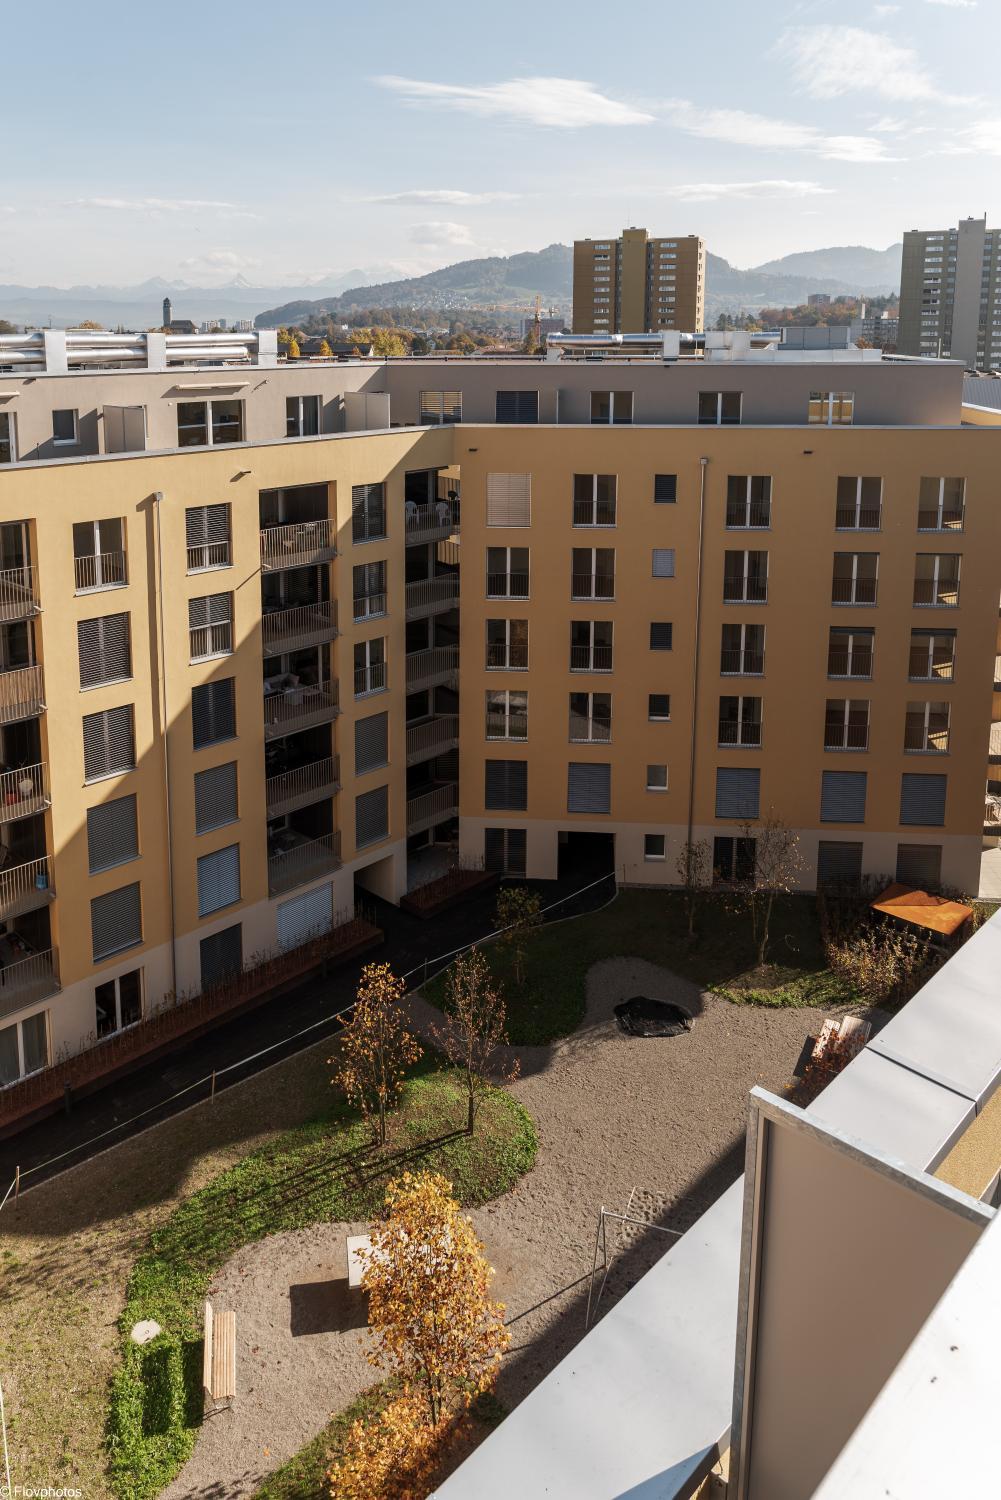 NEW OPENING 2022 - Los Lorentes Apartments Bern City, Bern